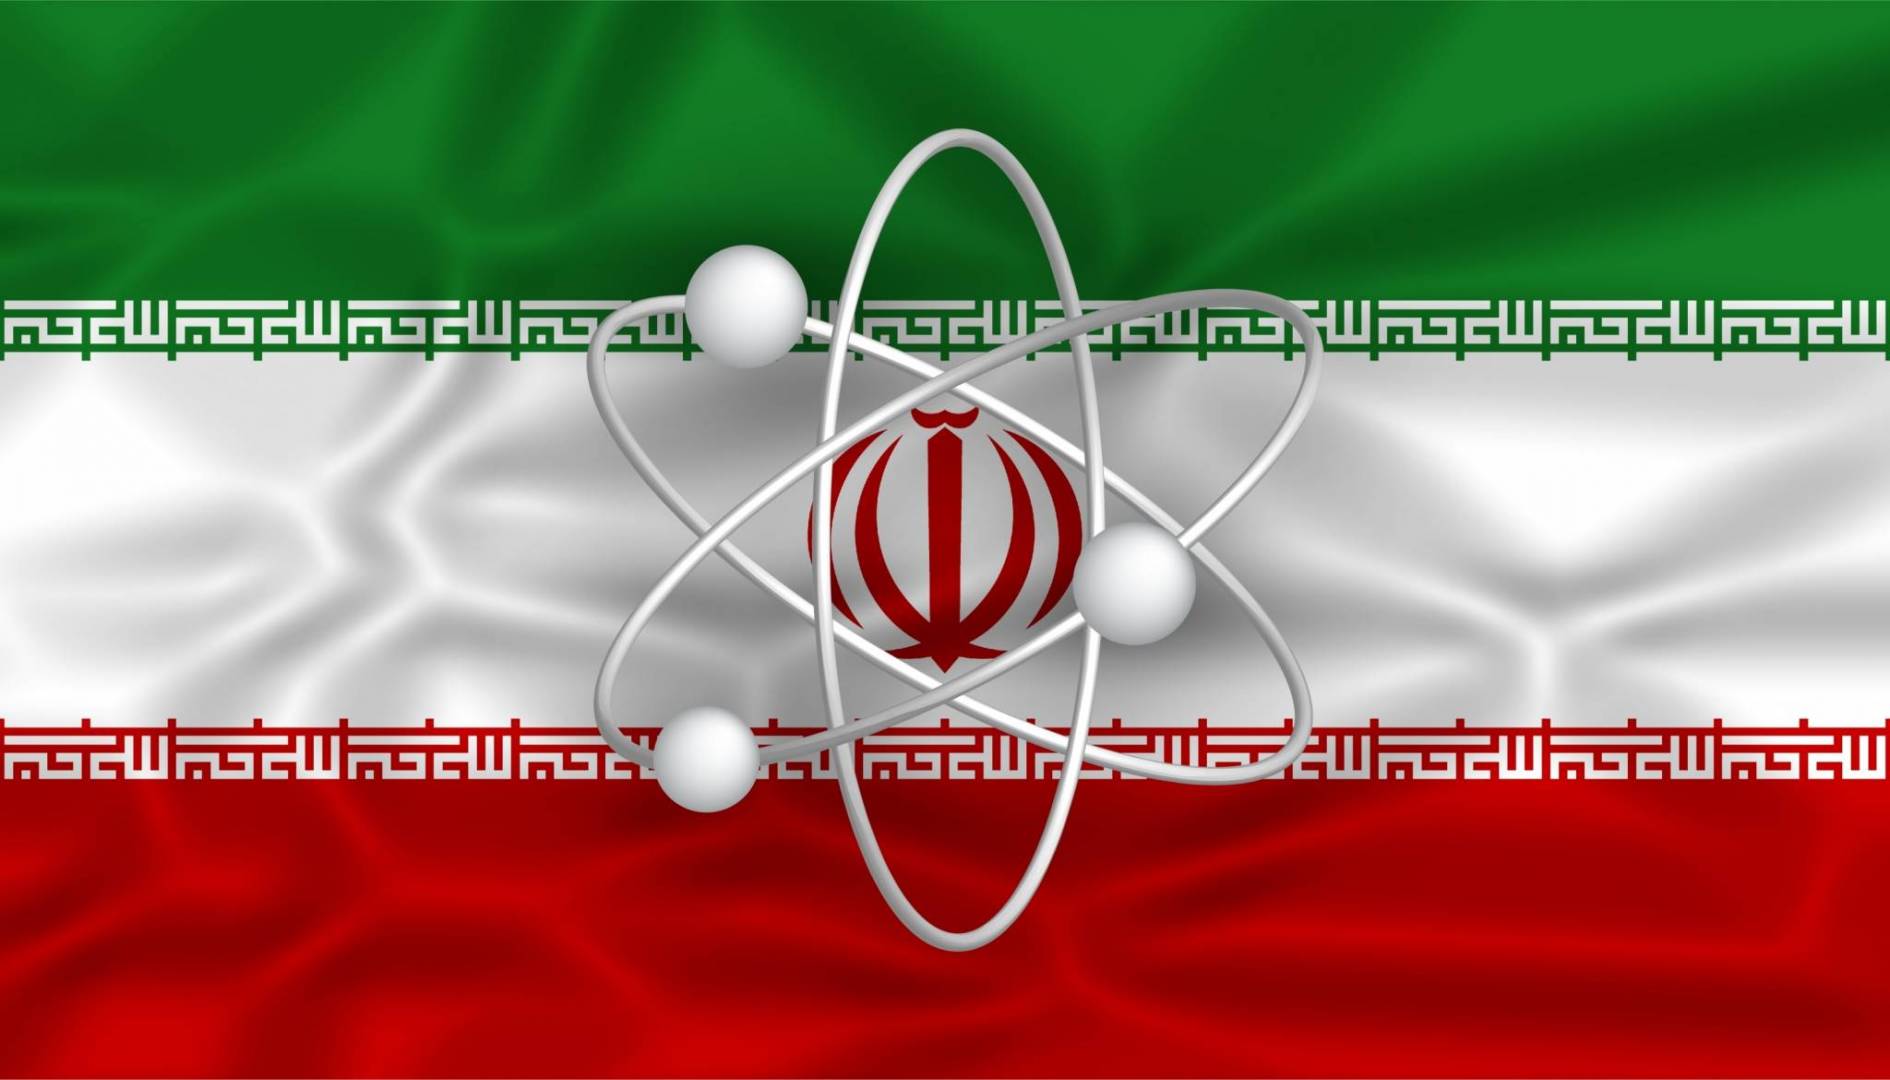 بيان أوروبي فرنسي ألماني بريطاني: على إيران العودة إلى الالتزام بالاتفاق النووي